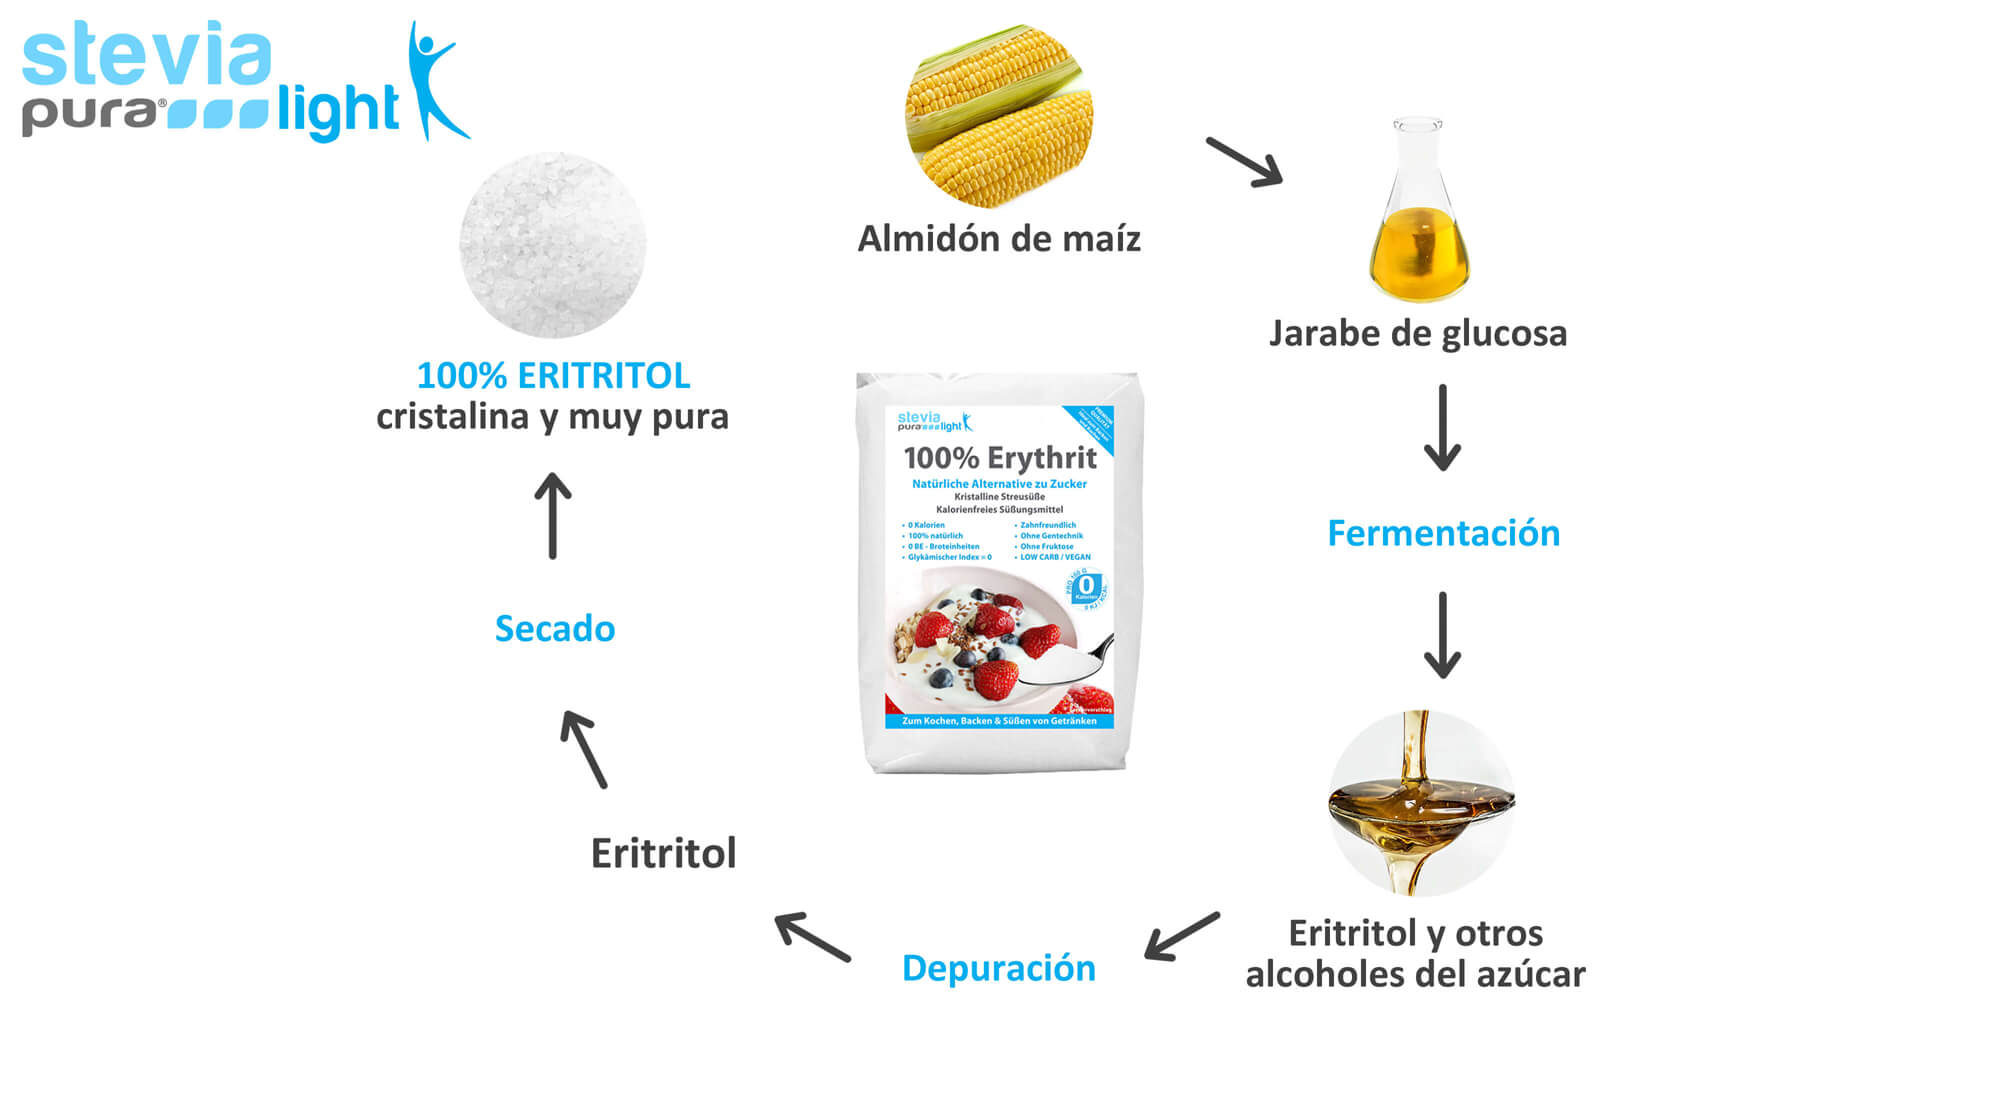 Producción de Eritritol: El Eritritol se obtiene por fermentación.